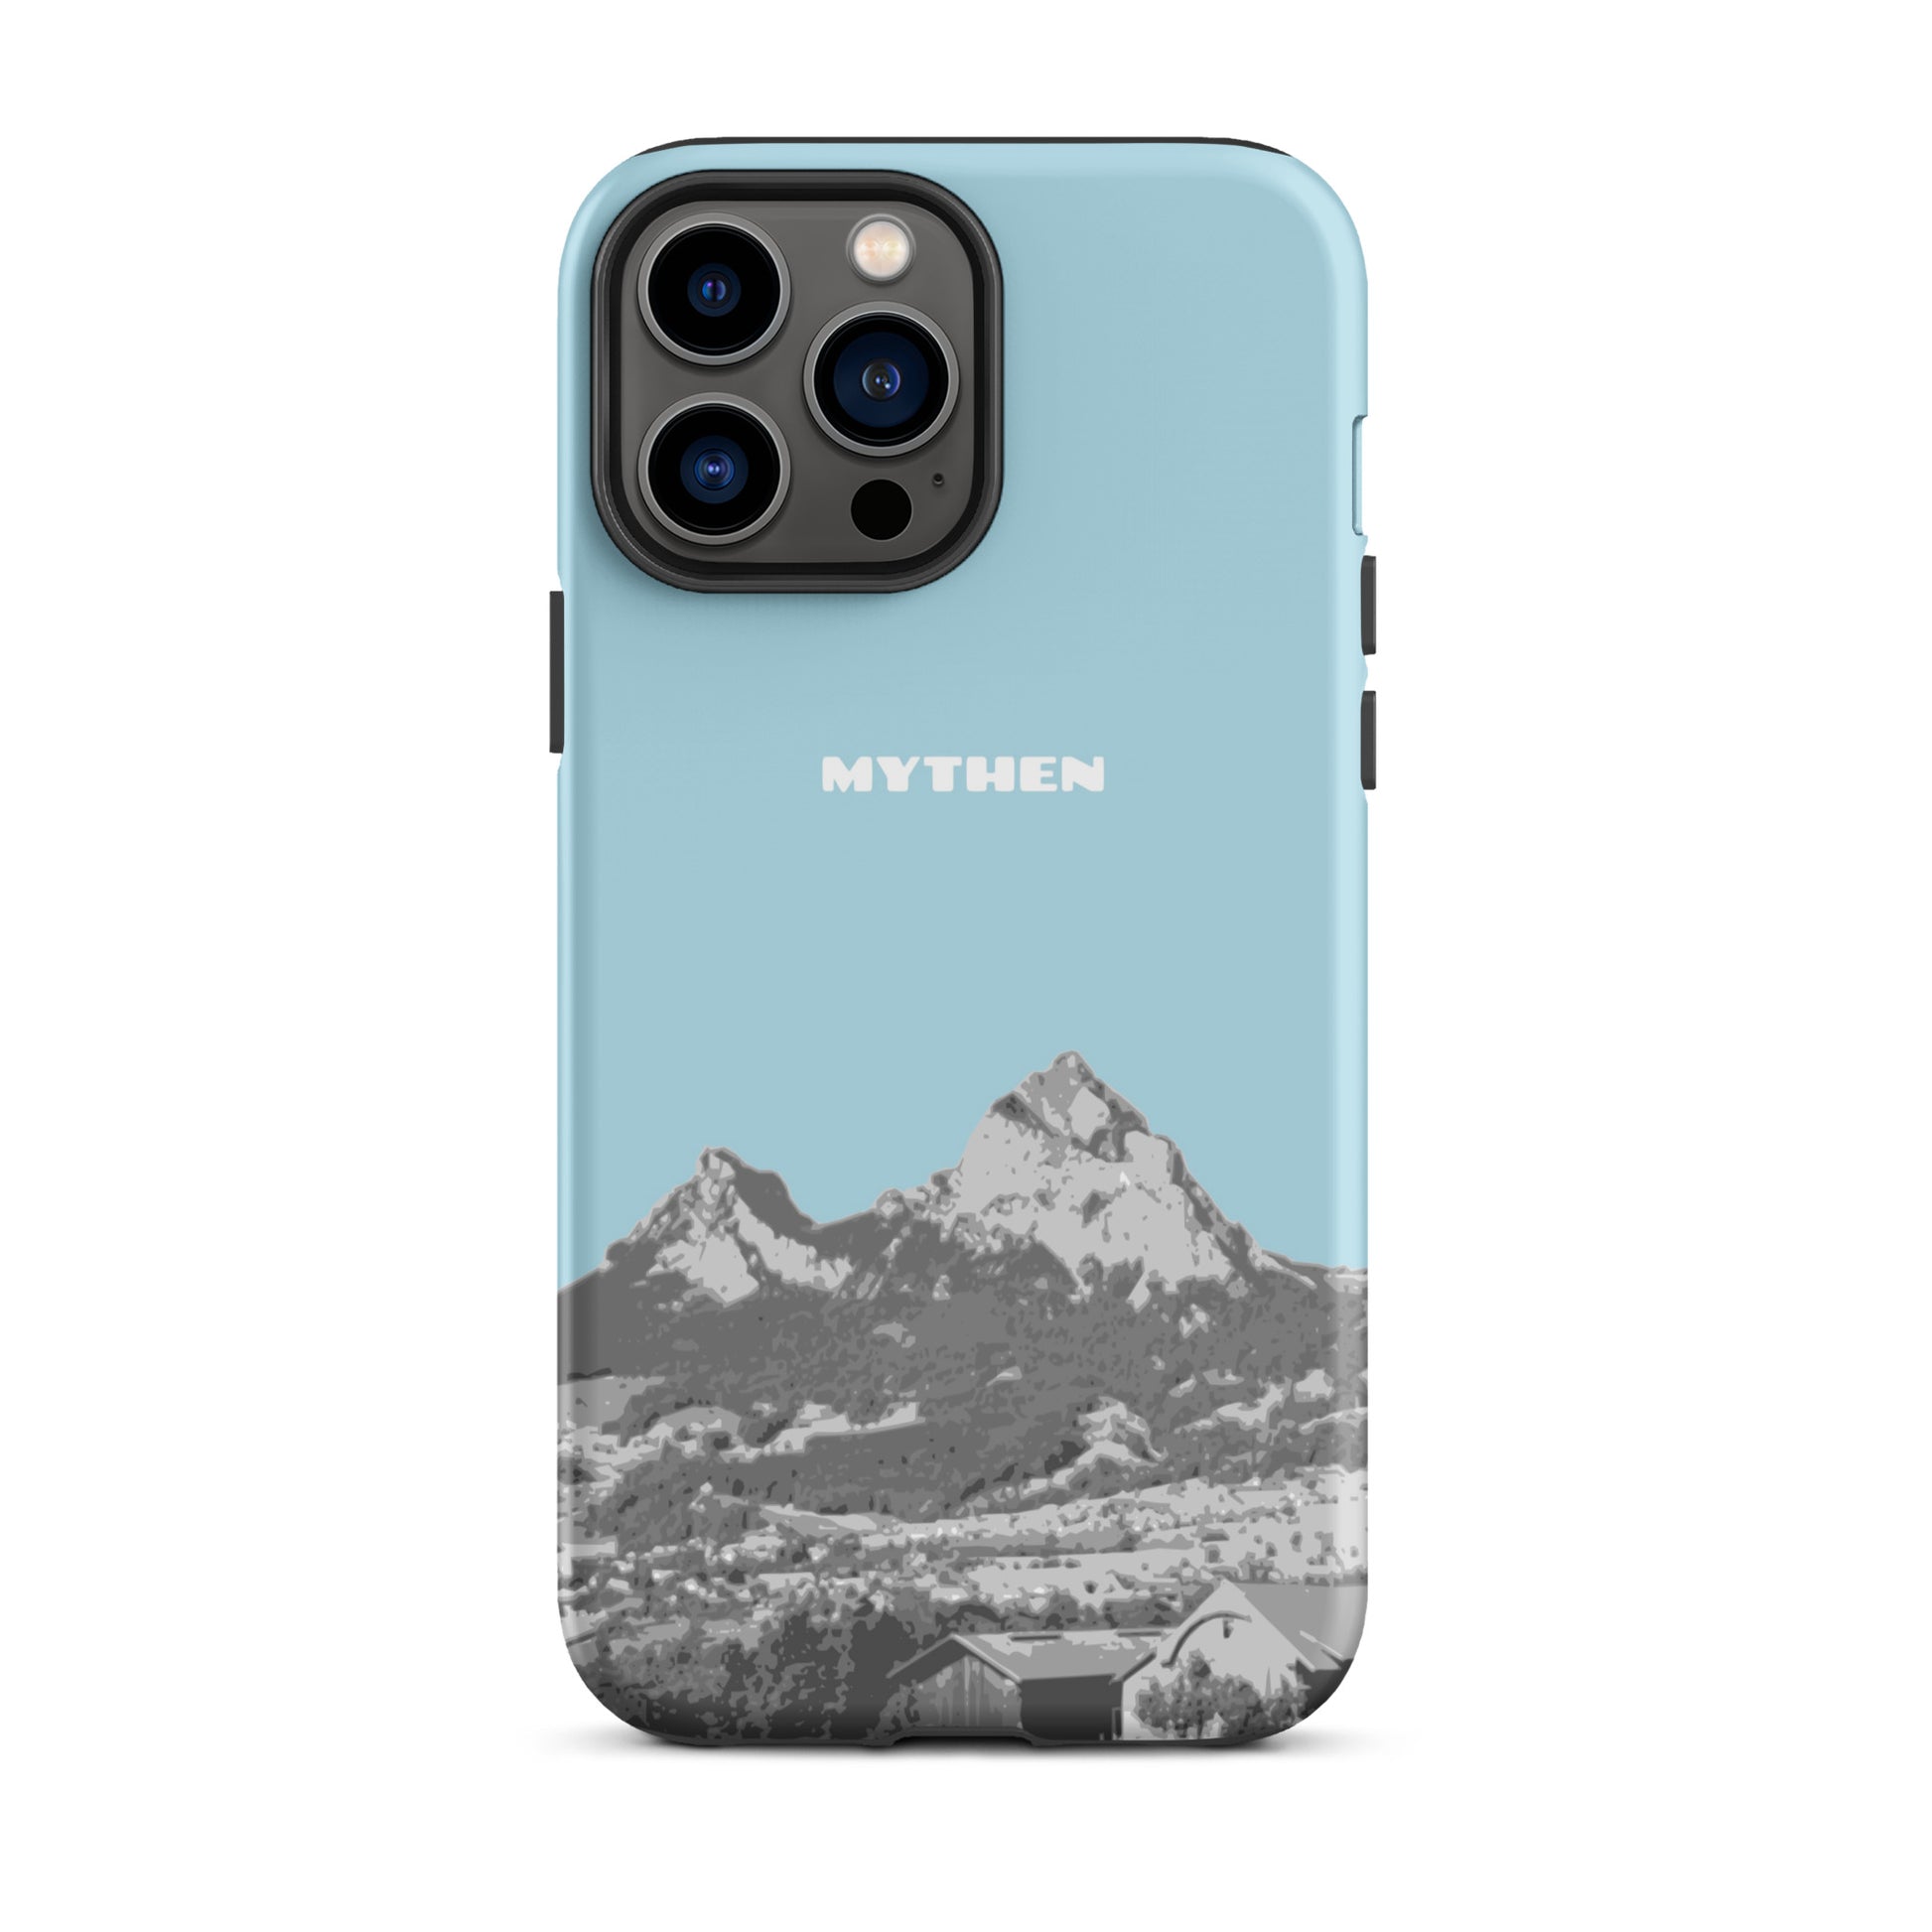 Hülle für das iPhone 13 Pro Max von Apple in der Farbe Hellblau, die den Grossen Mythen und den Kleinen Mythen bei Schwyz zeigt. 